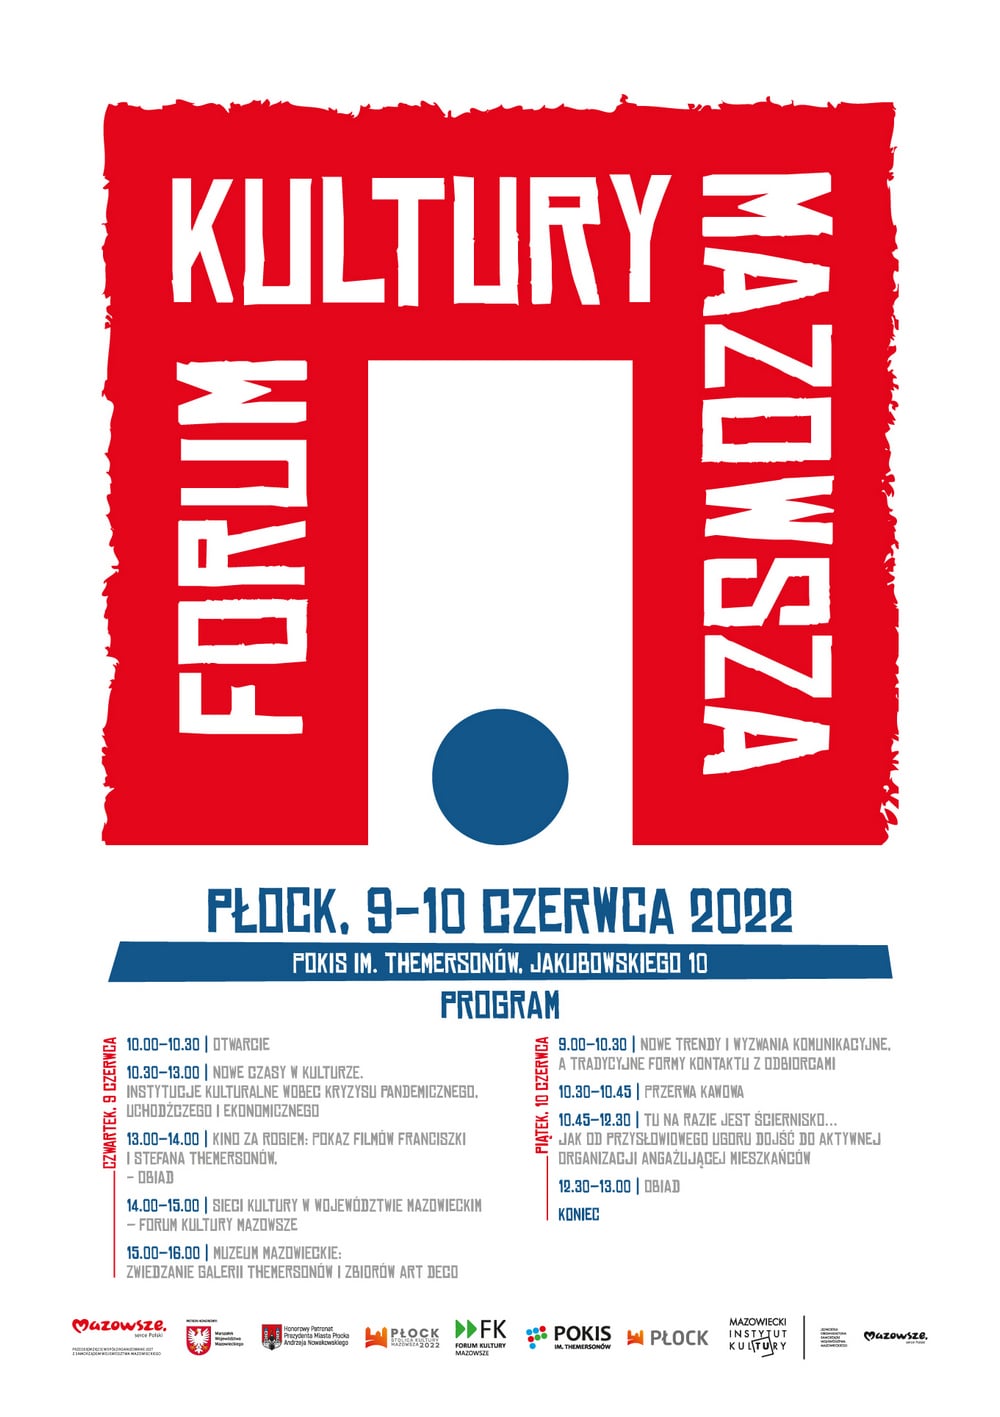 plakat: czerwona bryła z napisem forum kultury mazowsza